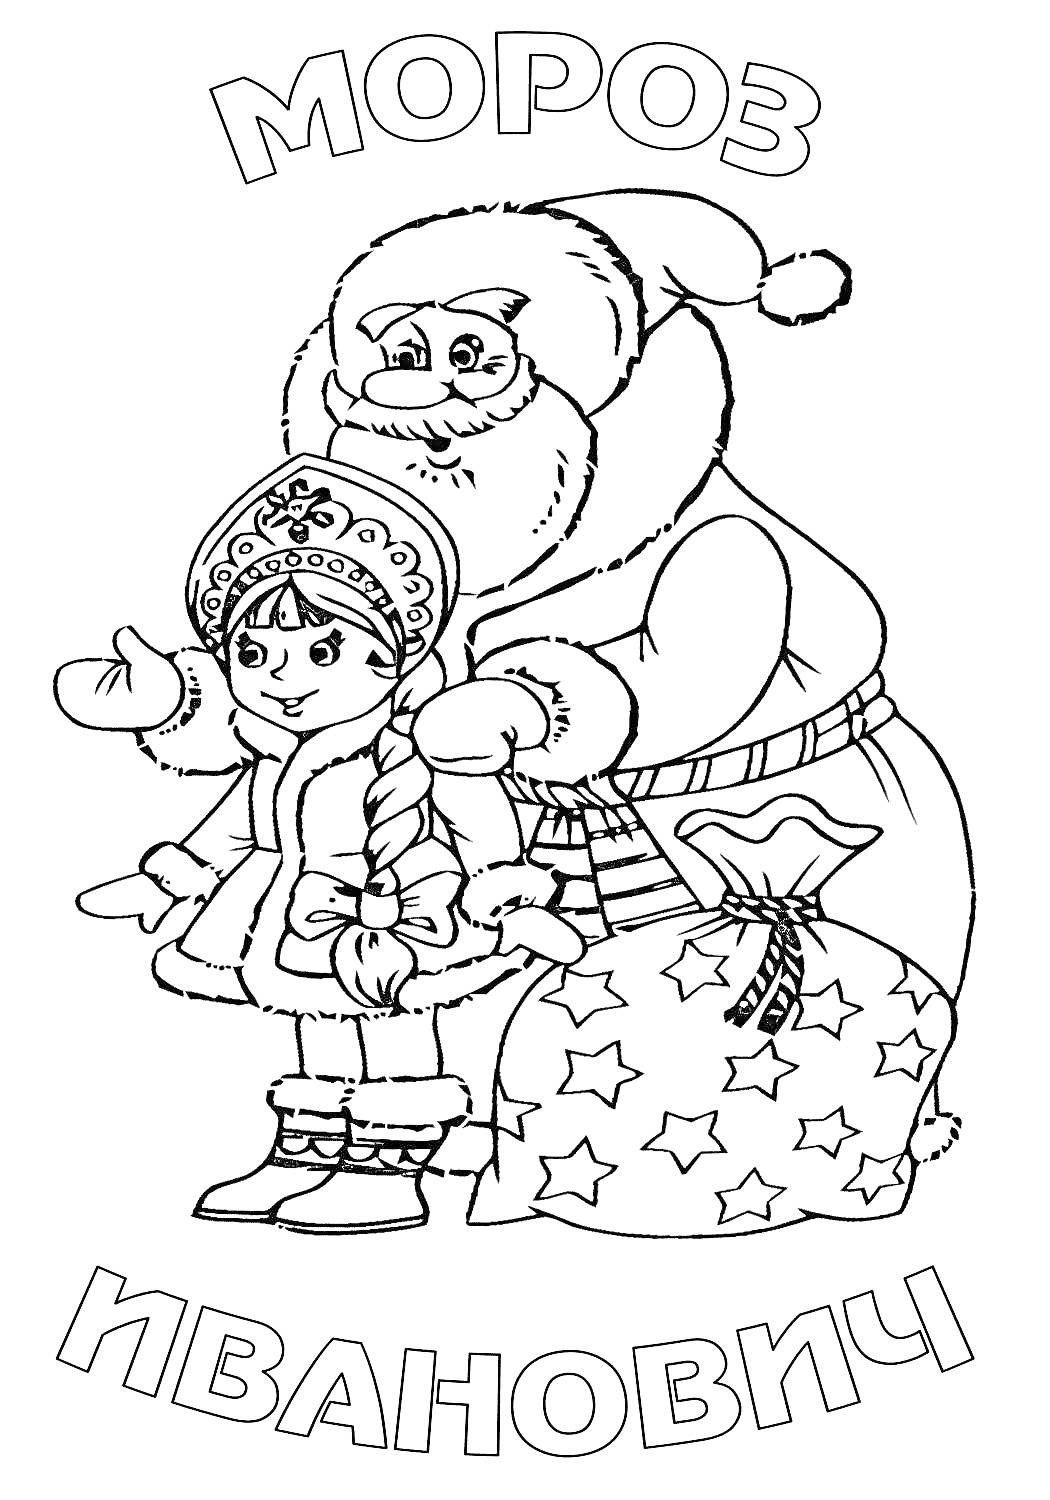 Мороз Иванович и девочка в зимней одежде рядом с мешком с подарками